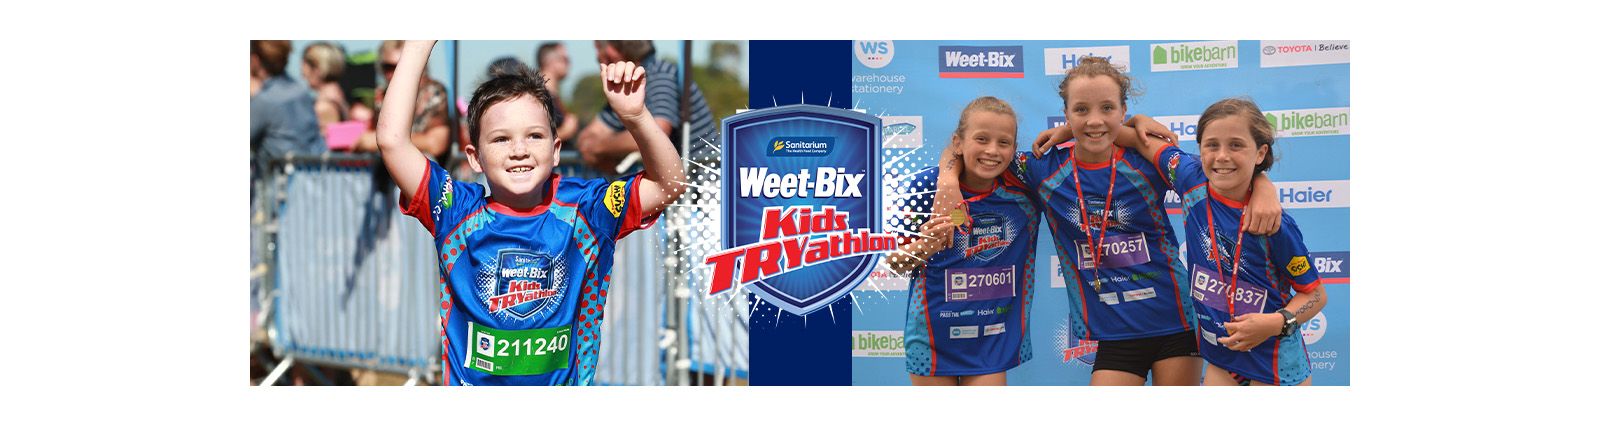 Weet-Bix Kiwi Kids TRYathlon